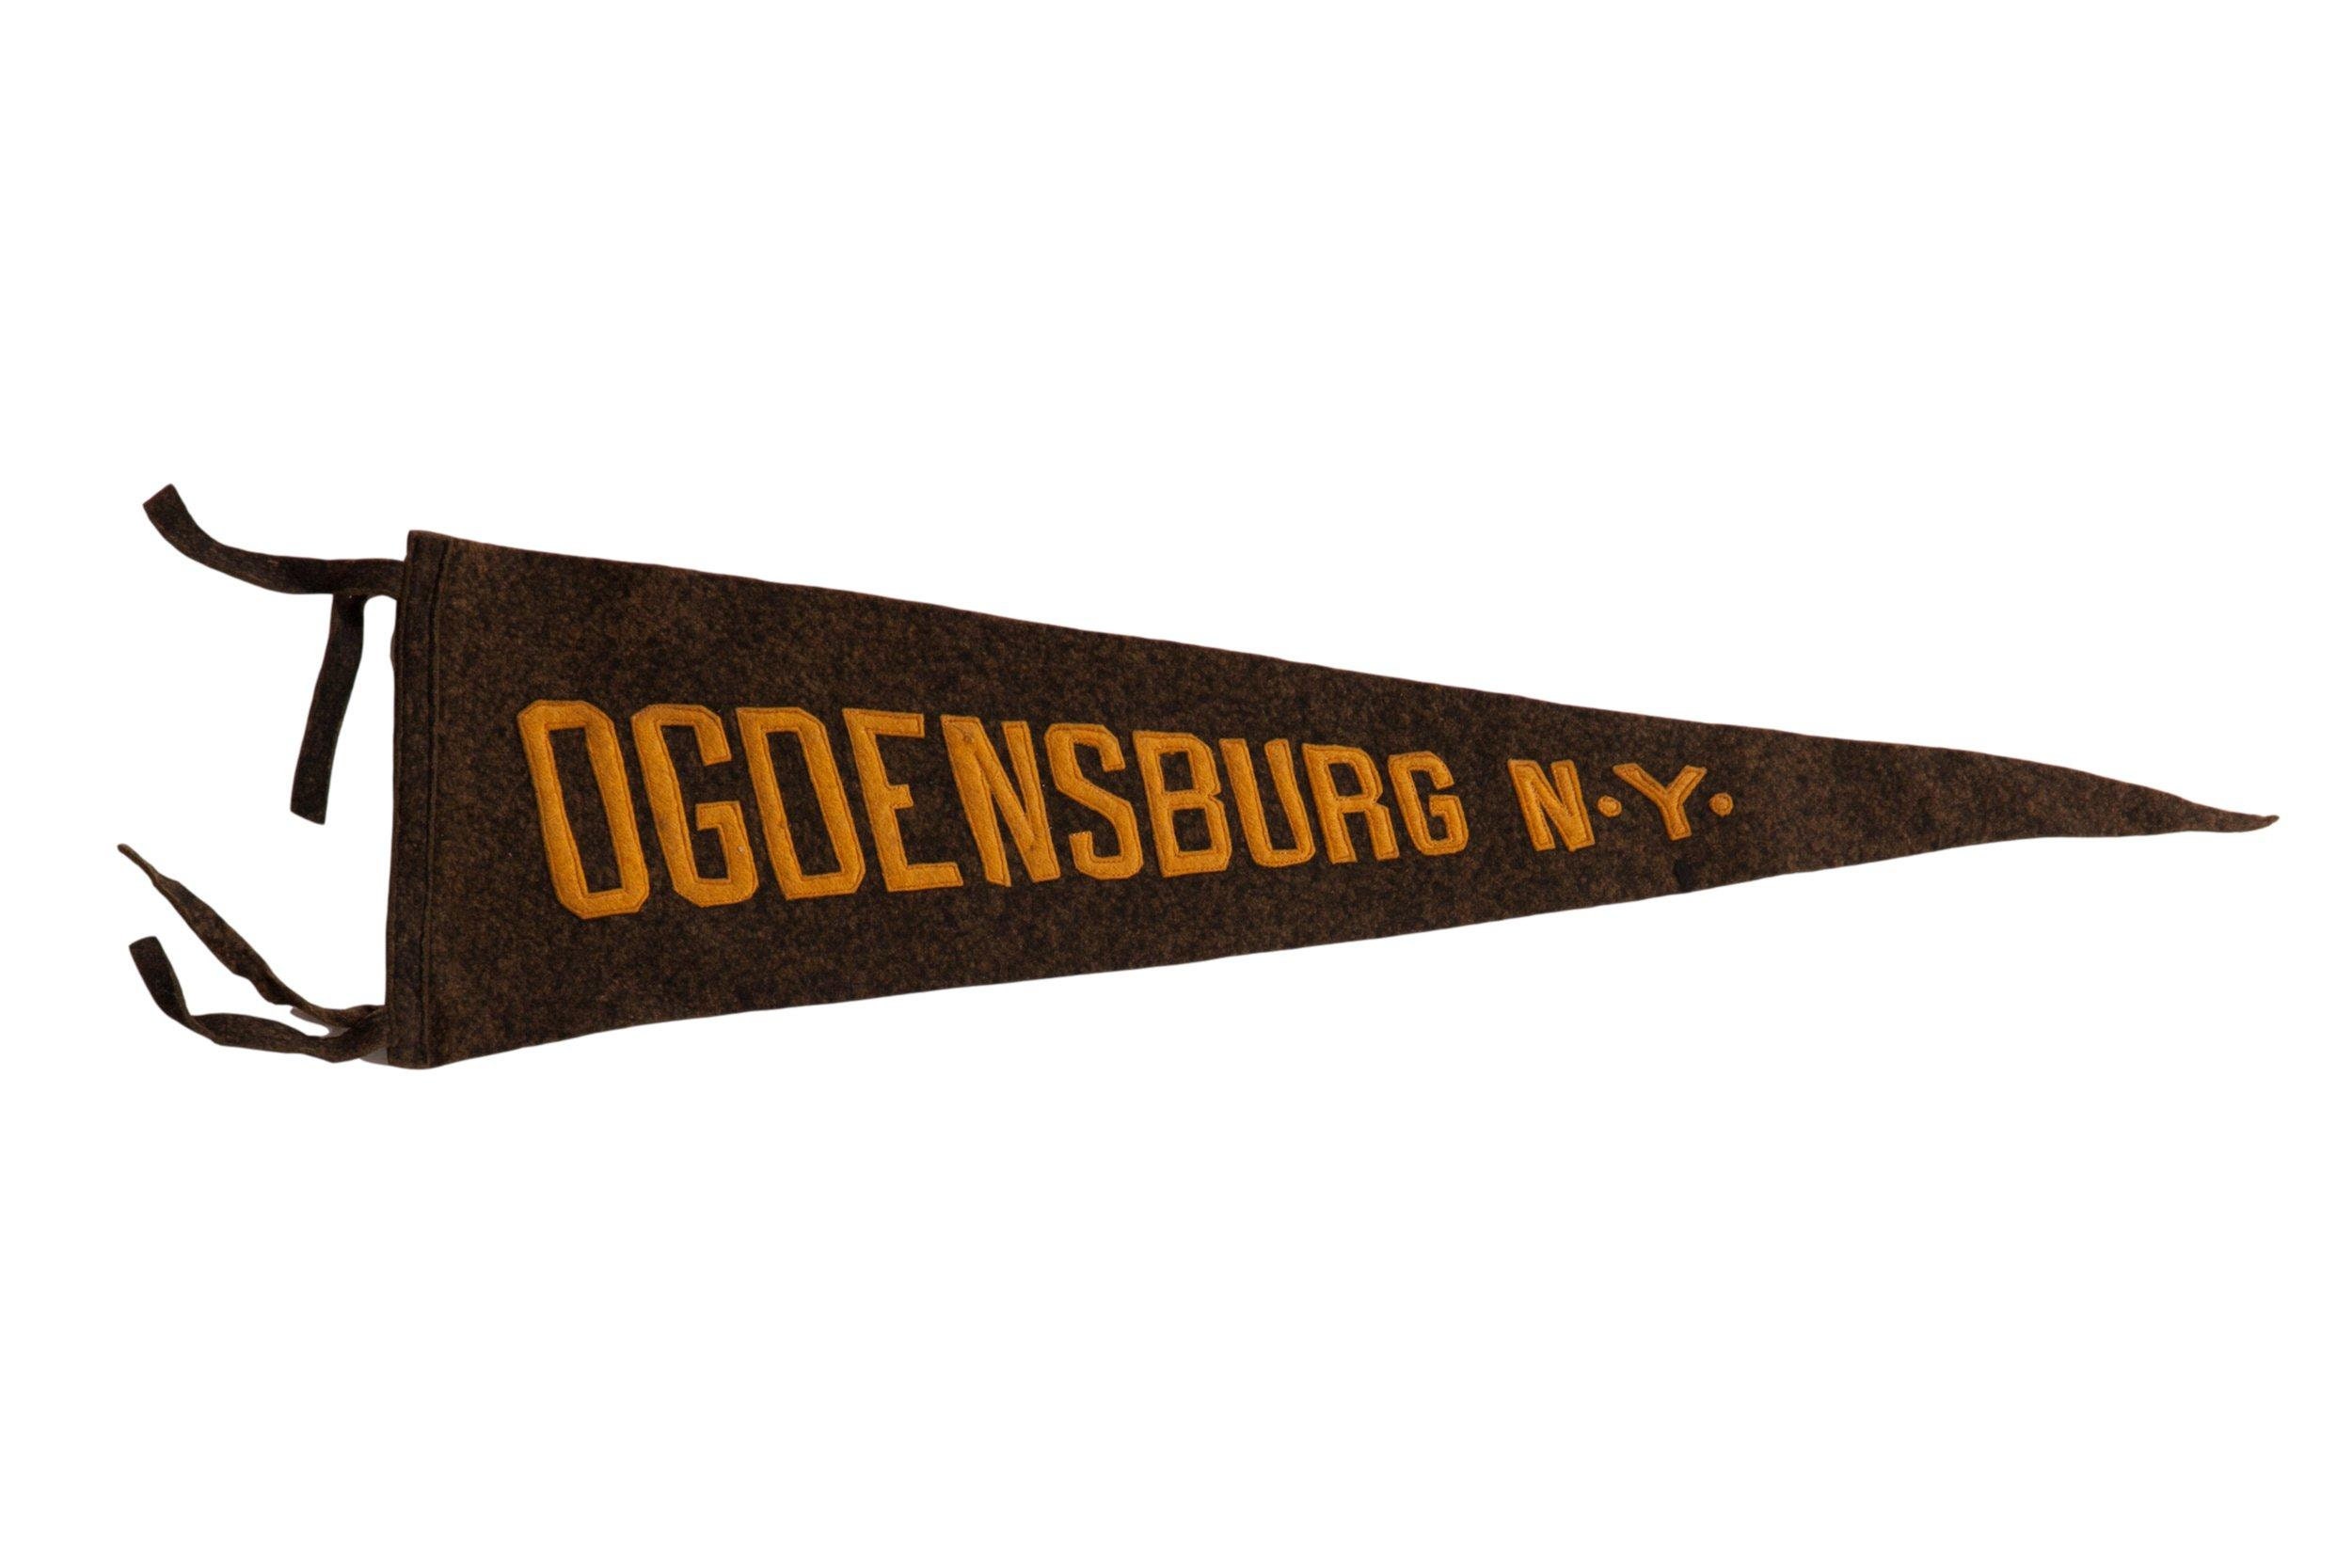 Ogdensburg Ny image image